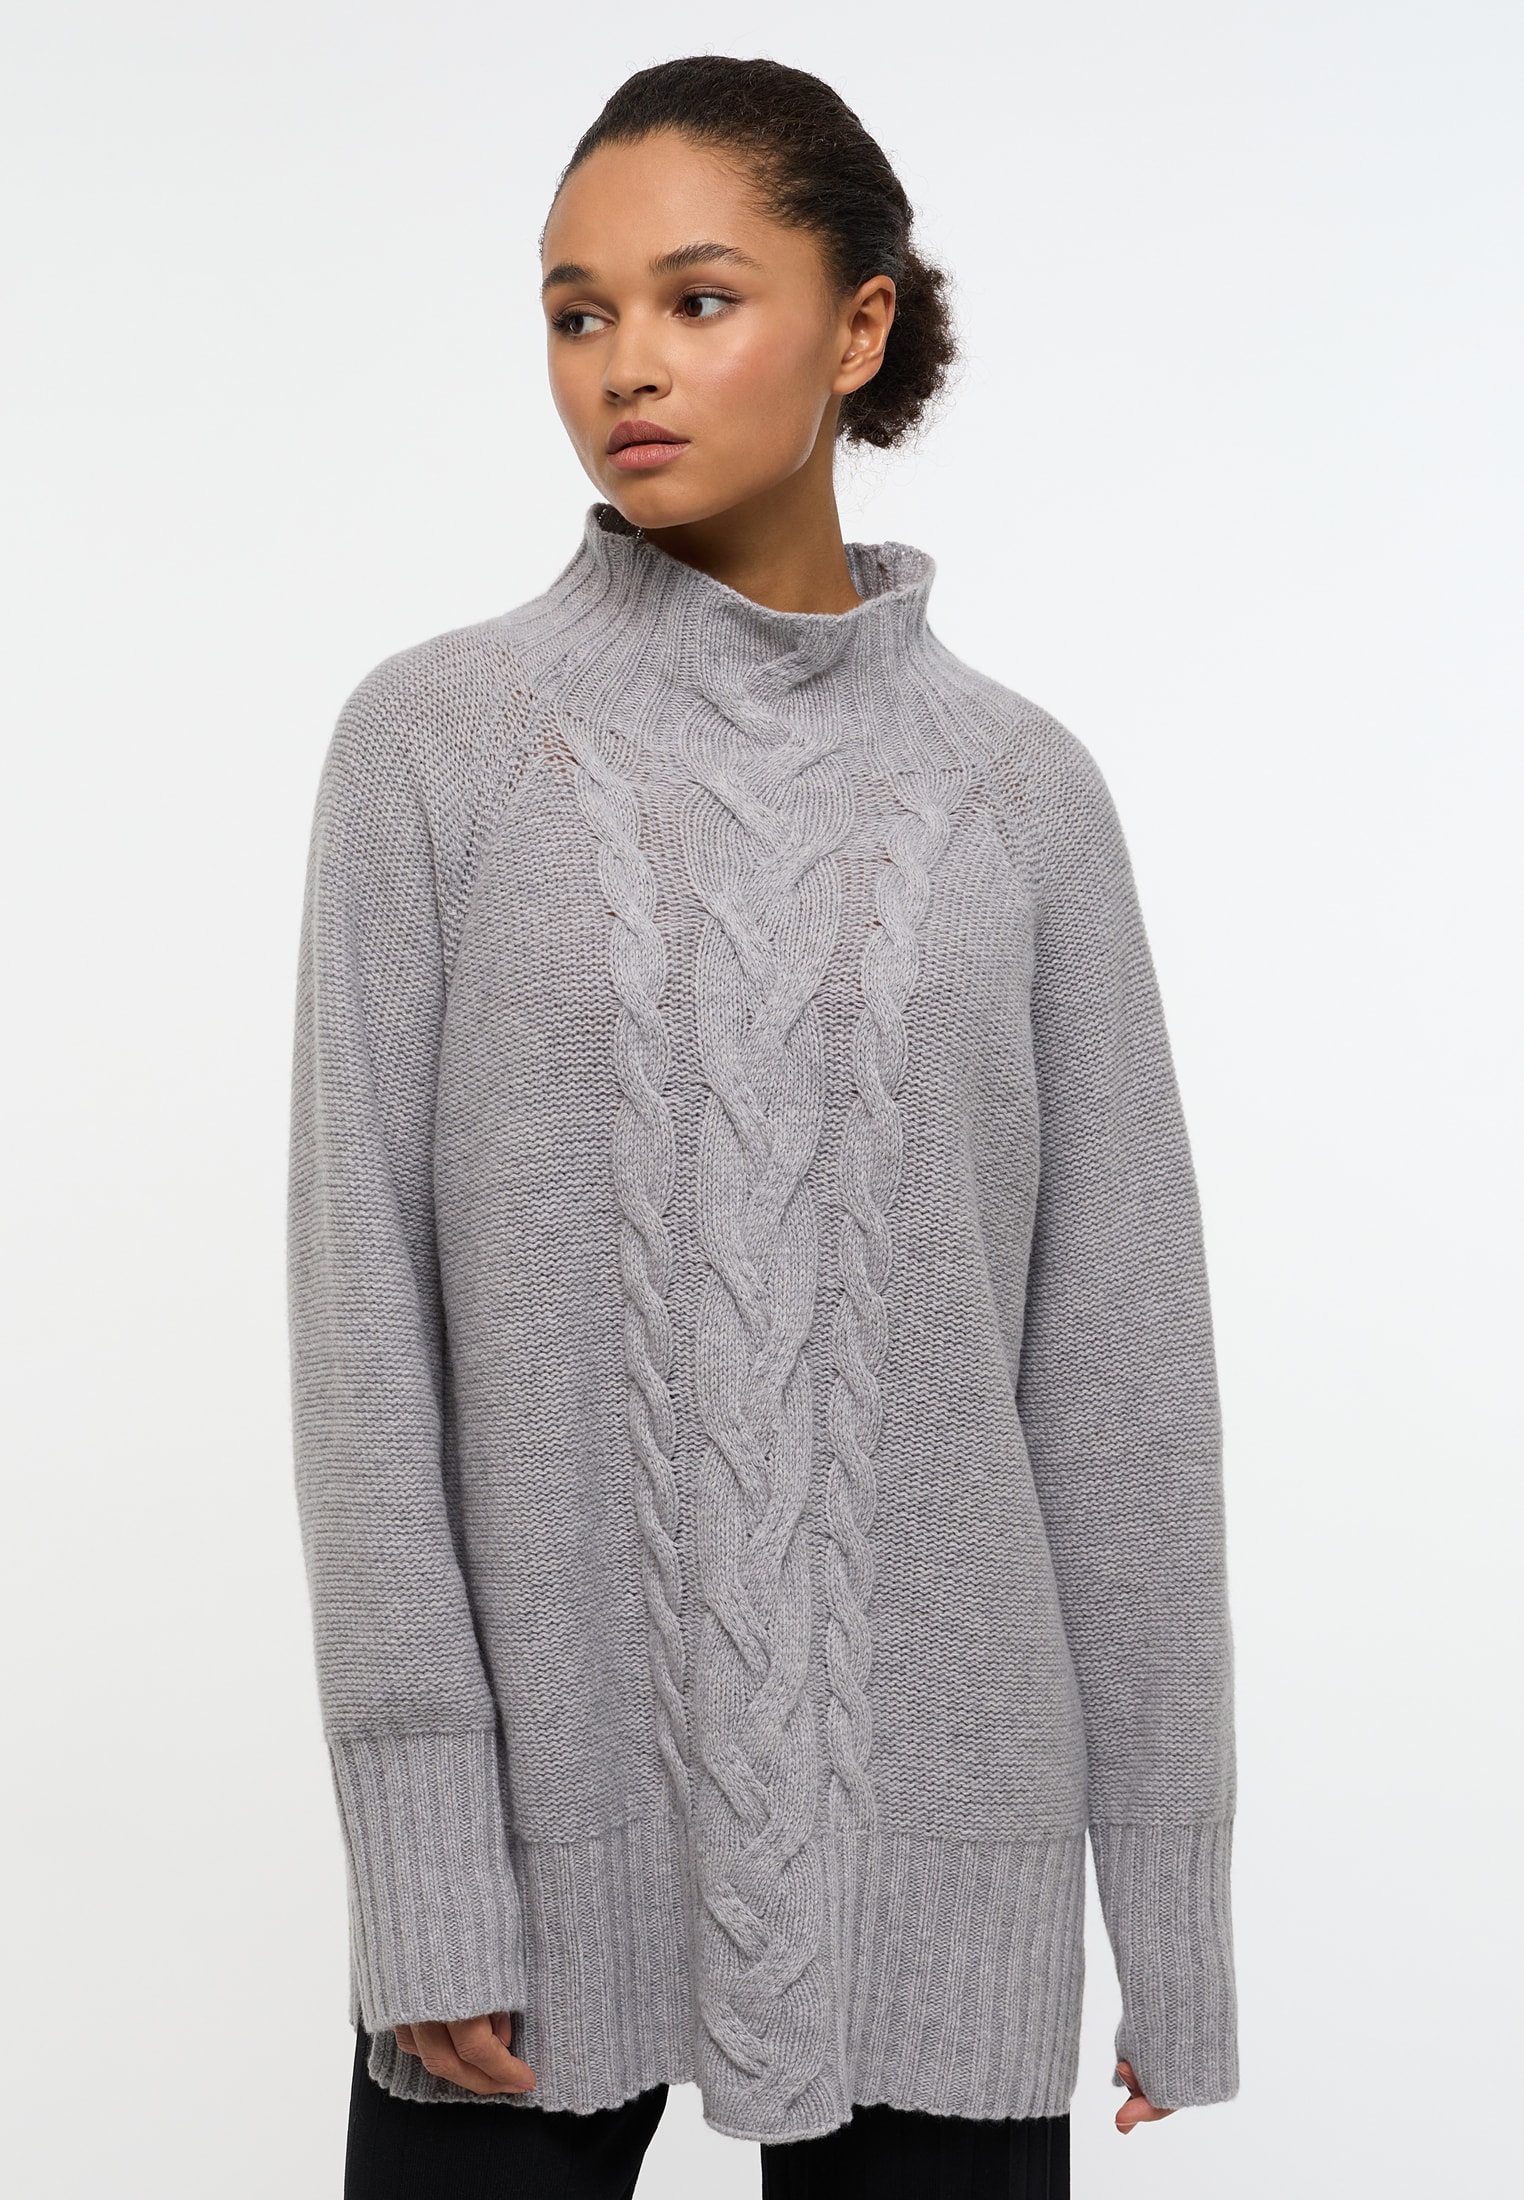 Pull en tricot gris uni